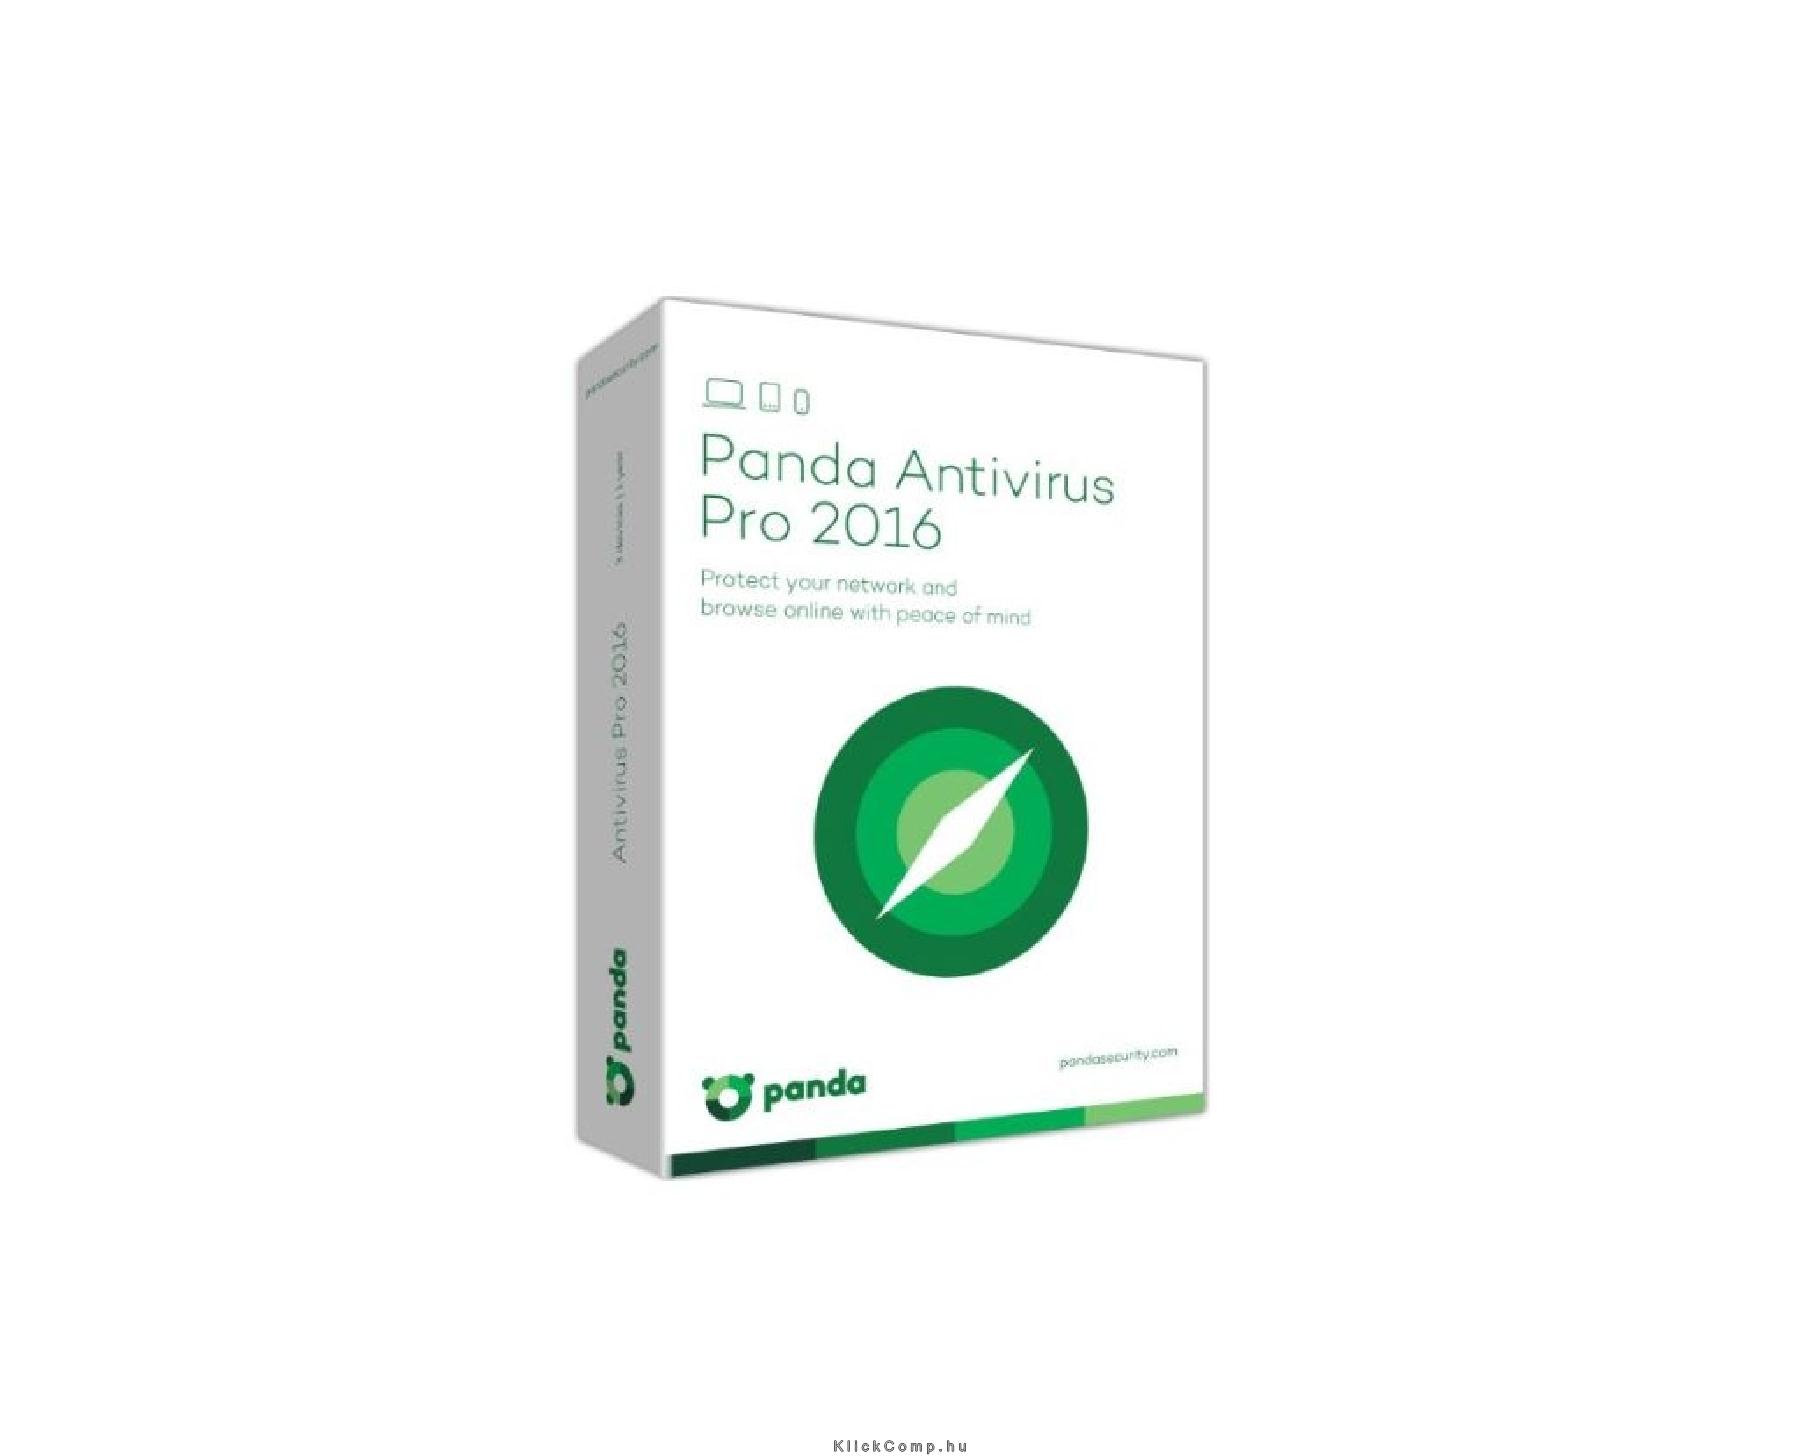 Panda Antivirus Pro 2016 HUN Hosszabbítás 3 Eszköz 1 év online vírusirtó szoftv fotó, illusztráció : UW12AP16